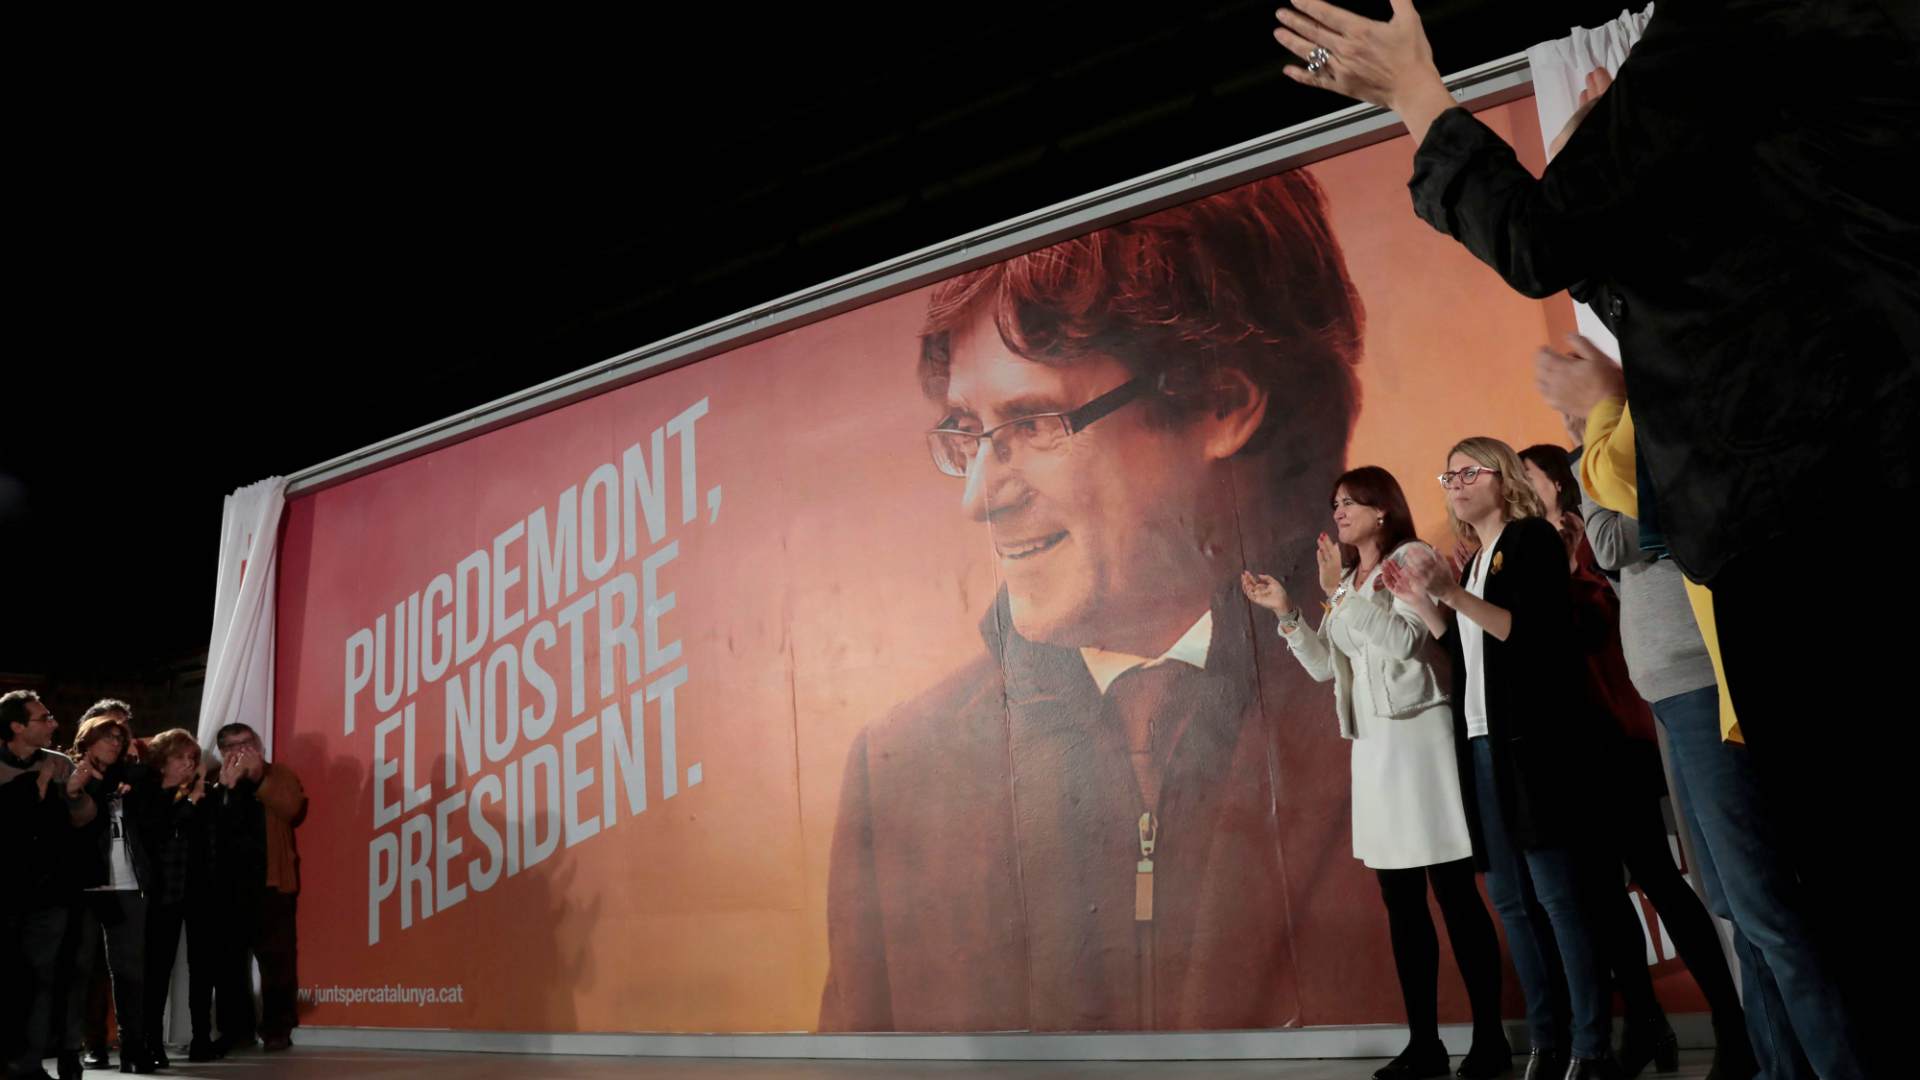 Arranca la campaña electoral catalana con la 'ausencia' de los candidatos soberanistas